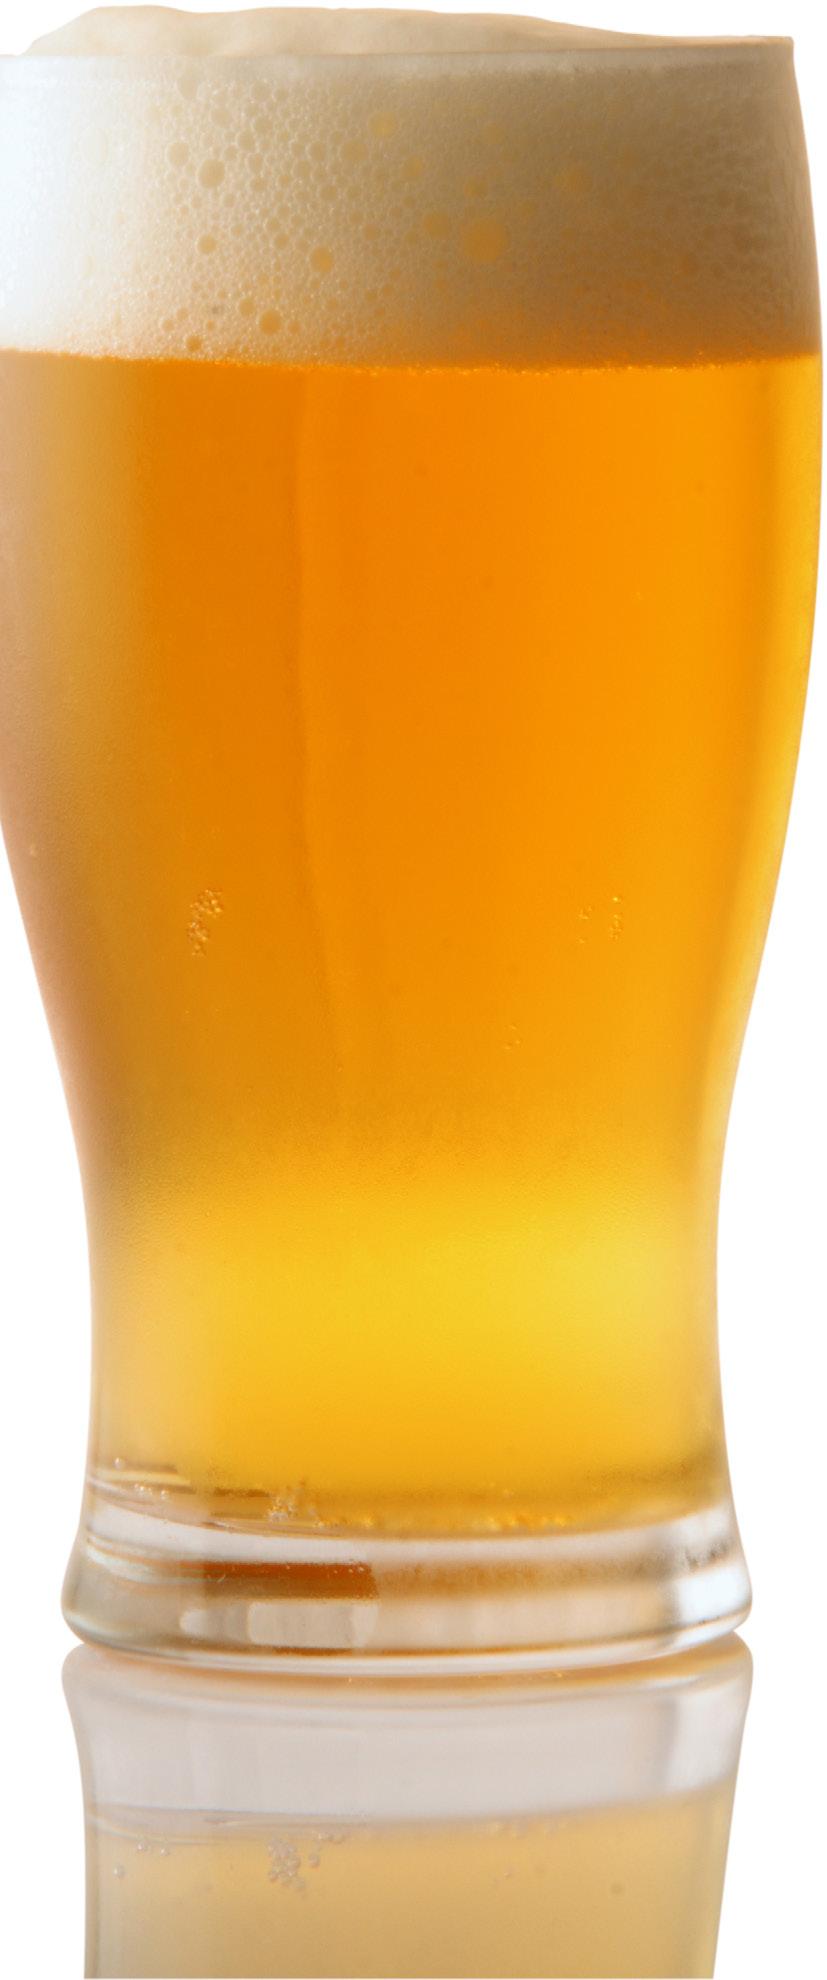 Beverages Beer / Craft Beer Cisk, Cisk Excel Hopleaf, Blue Lable Shandy, Stella, Heineken 2,5 ml 1.85; Pint 3.